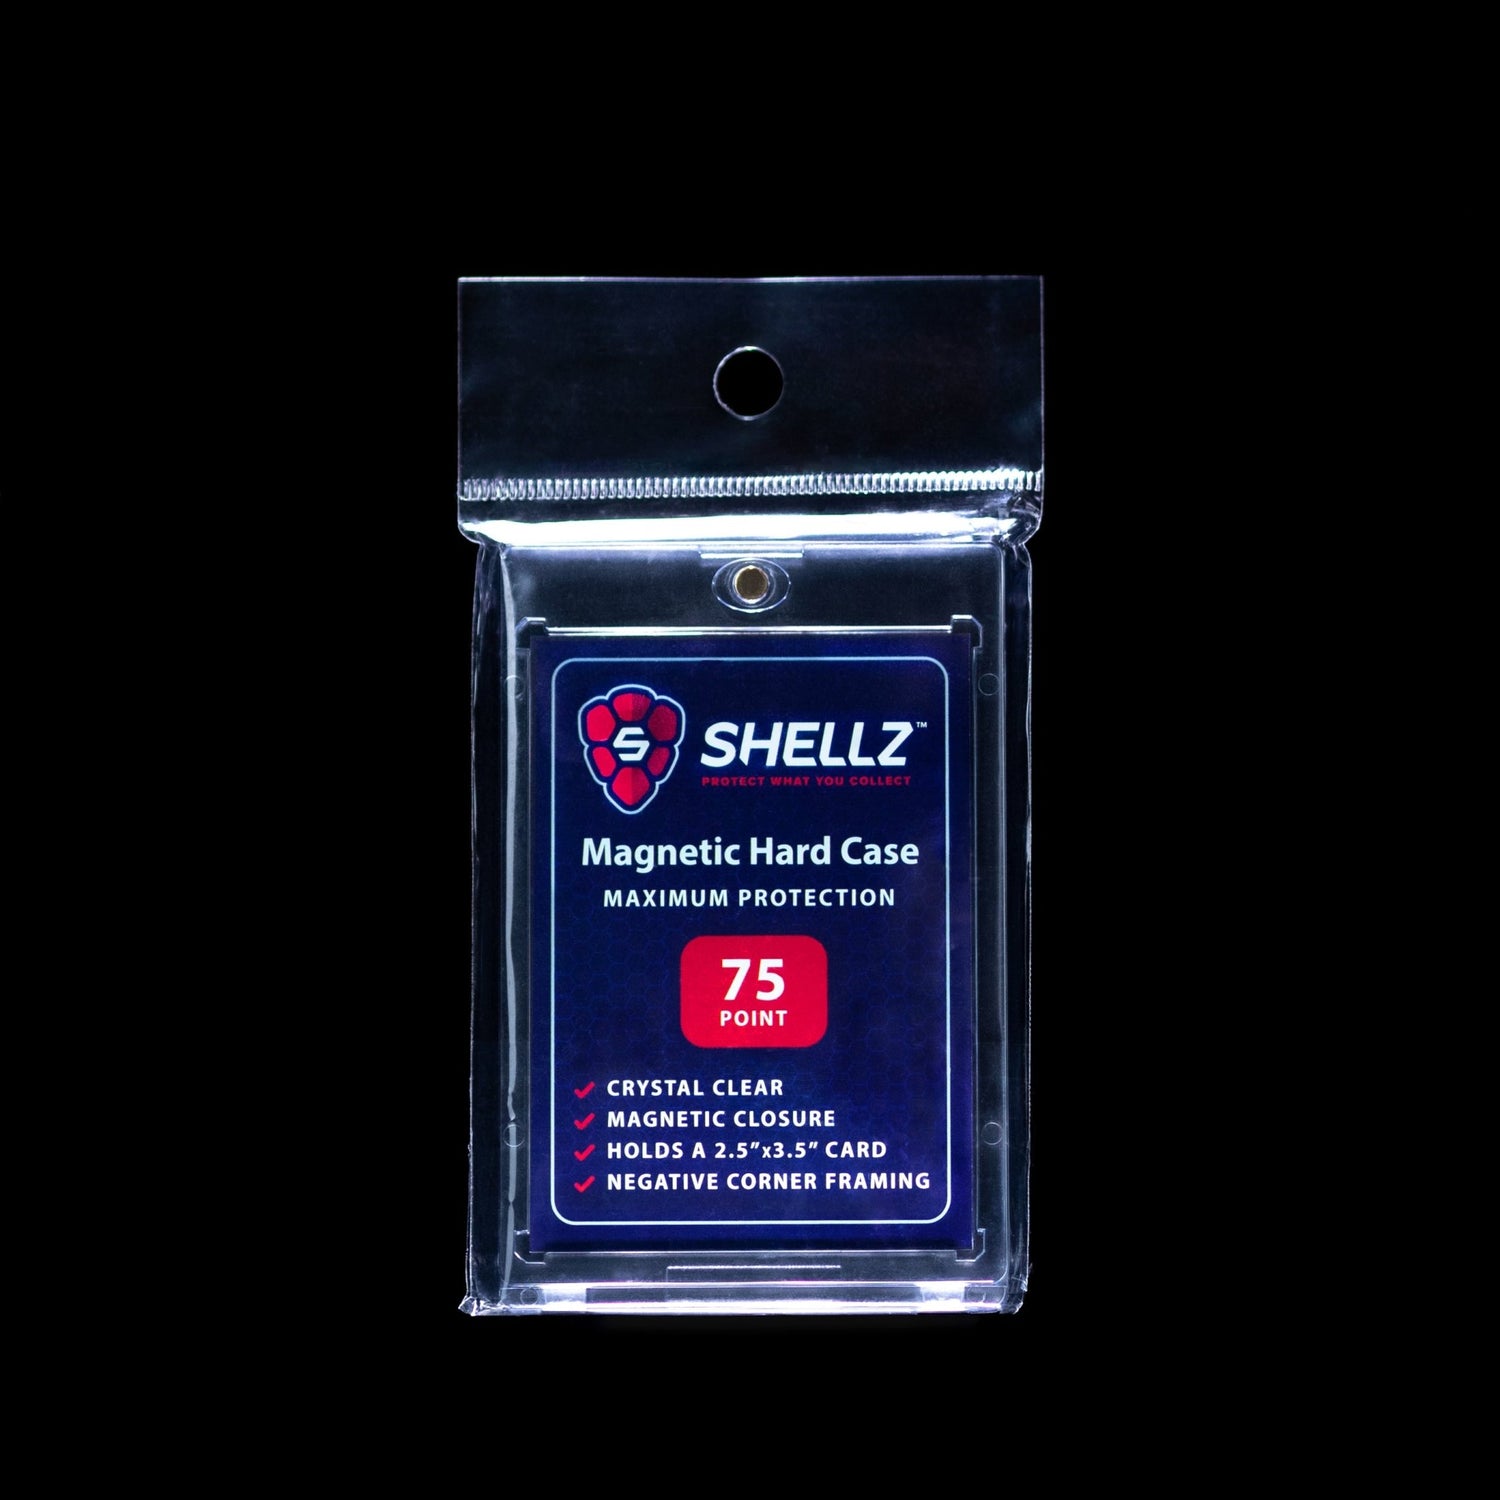 Shellz Magnetic Holder 75PT - Cardshellz